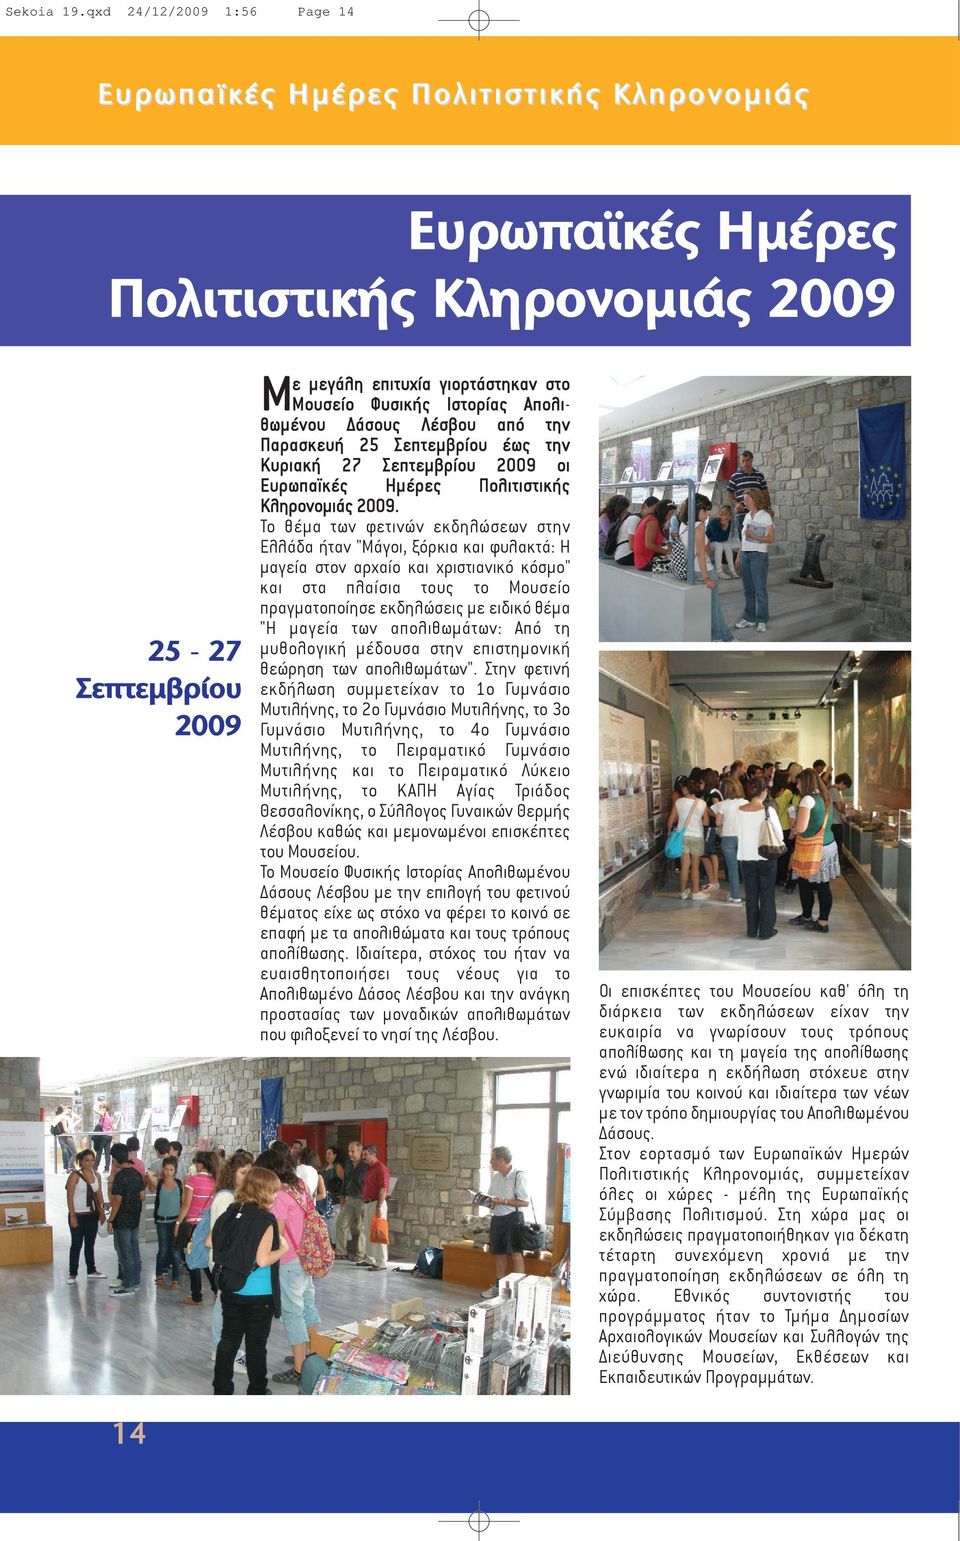 Ιστορίας Απολιθωμένου Δάσους Λέσβου από την Παρασκευή 25 Σεπτεμβρίου έως την Κυριακή 27 Σεπτεμβρίου 2009 οι Ευρωπαϊκές Ημέρες Πολιτιστικής Κληρονομιάς 2009.